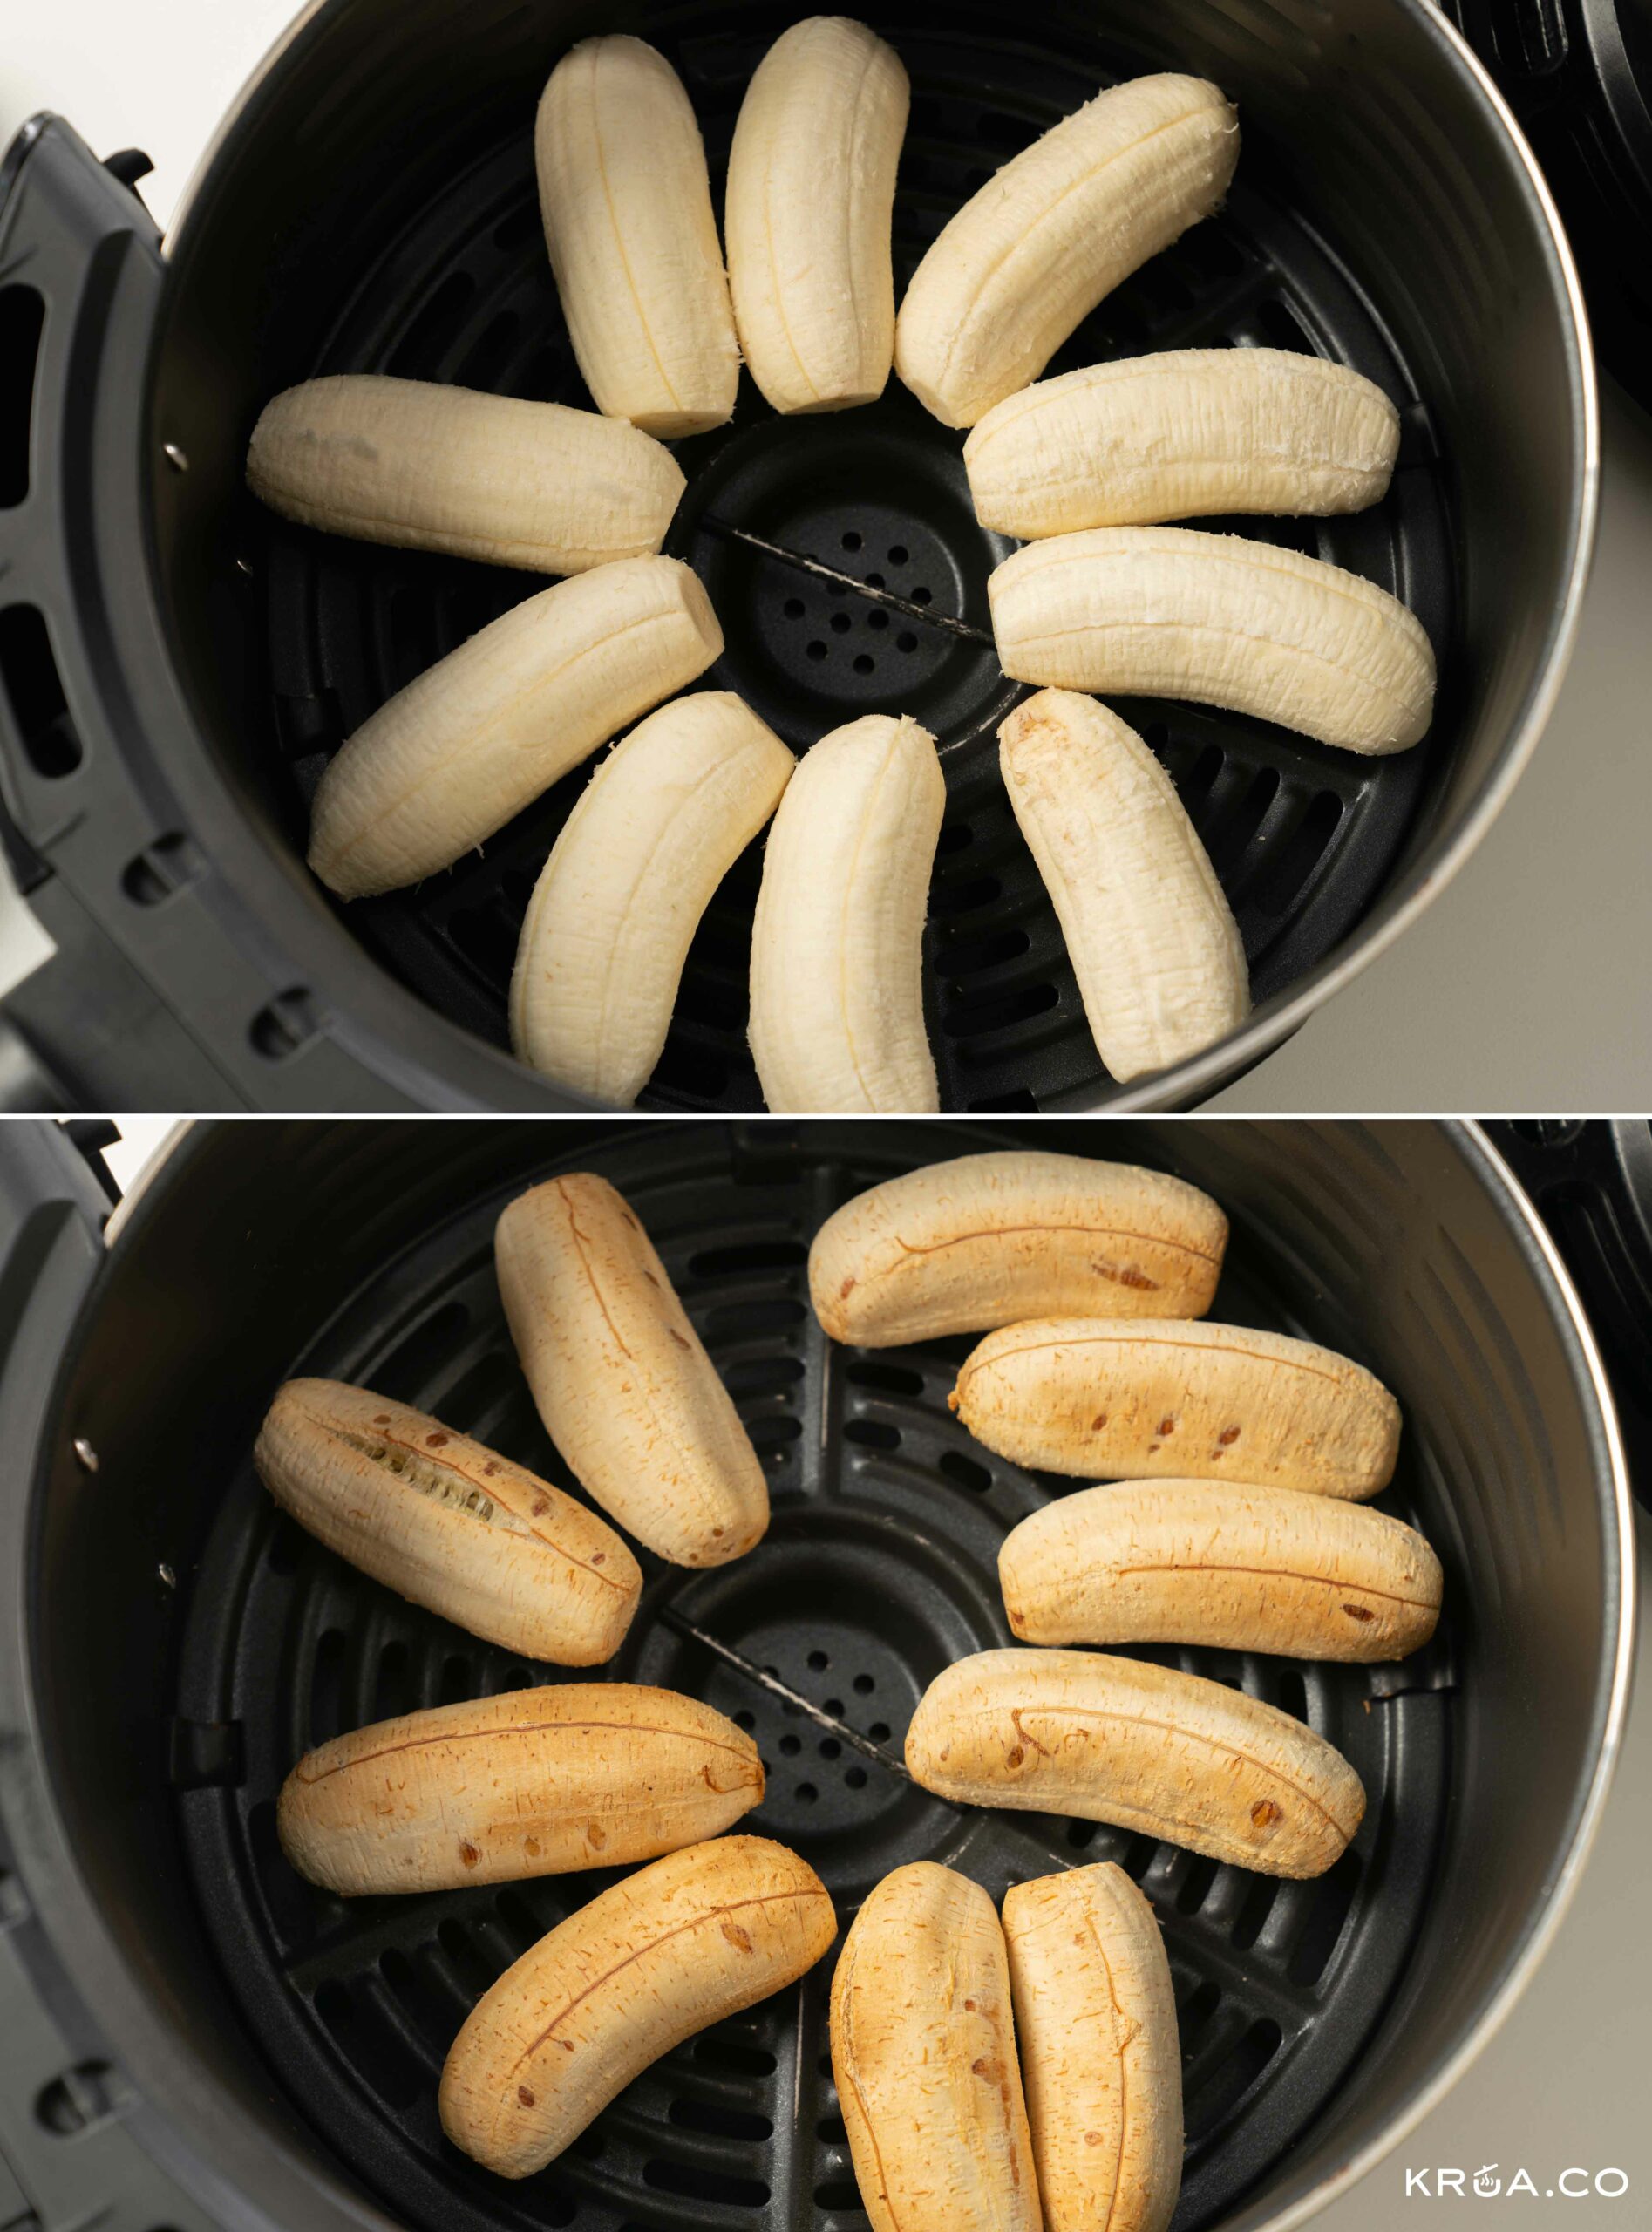 กล้วยปิ้ง,กล้วยปิ้งทรงเครื่อง,สูตรน้ำจิ้มกล้วยปิ้ง,สูตรน้ำจิ้มกล้วยปิ้งกะทิคาราเมล,กะทิคาราเมล,วิธีปิ้งกล้วย,ปิ้งกล้วยในหม้อทอดไร้น้ำมัน,ปิ้งกล้วยในหม้ออบลมร้อน